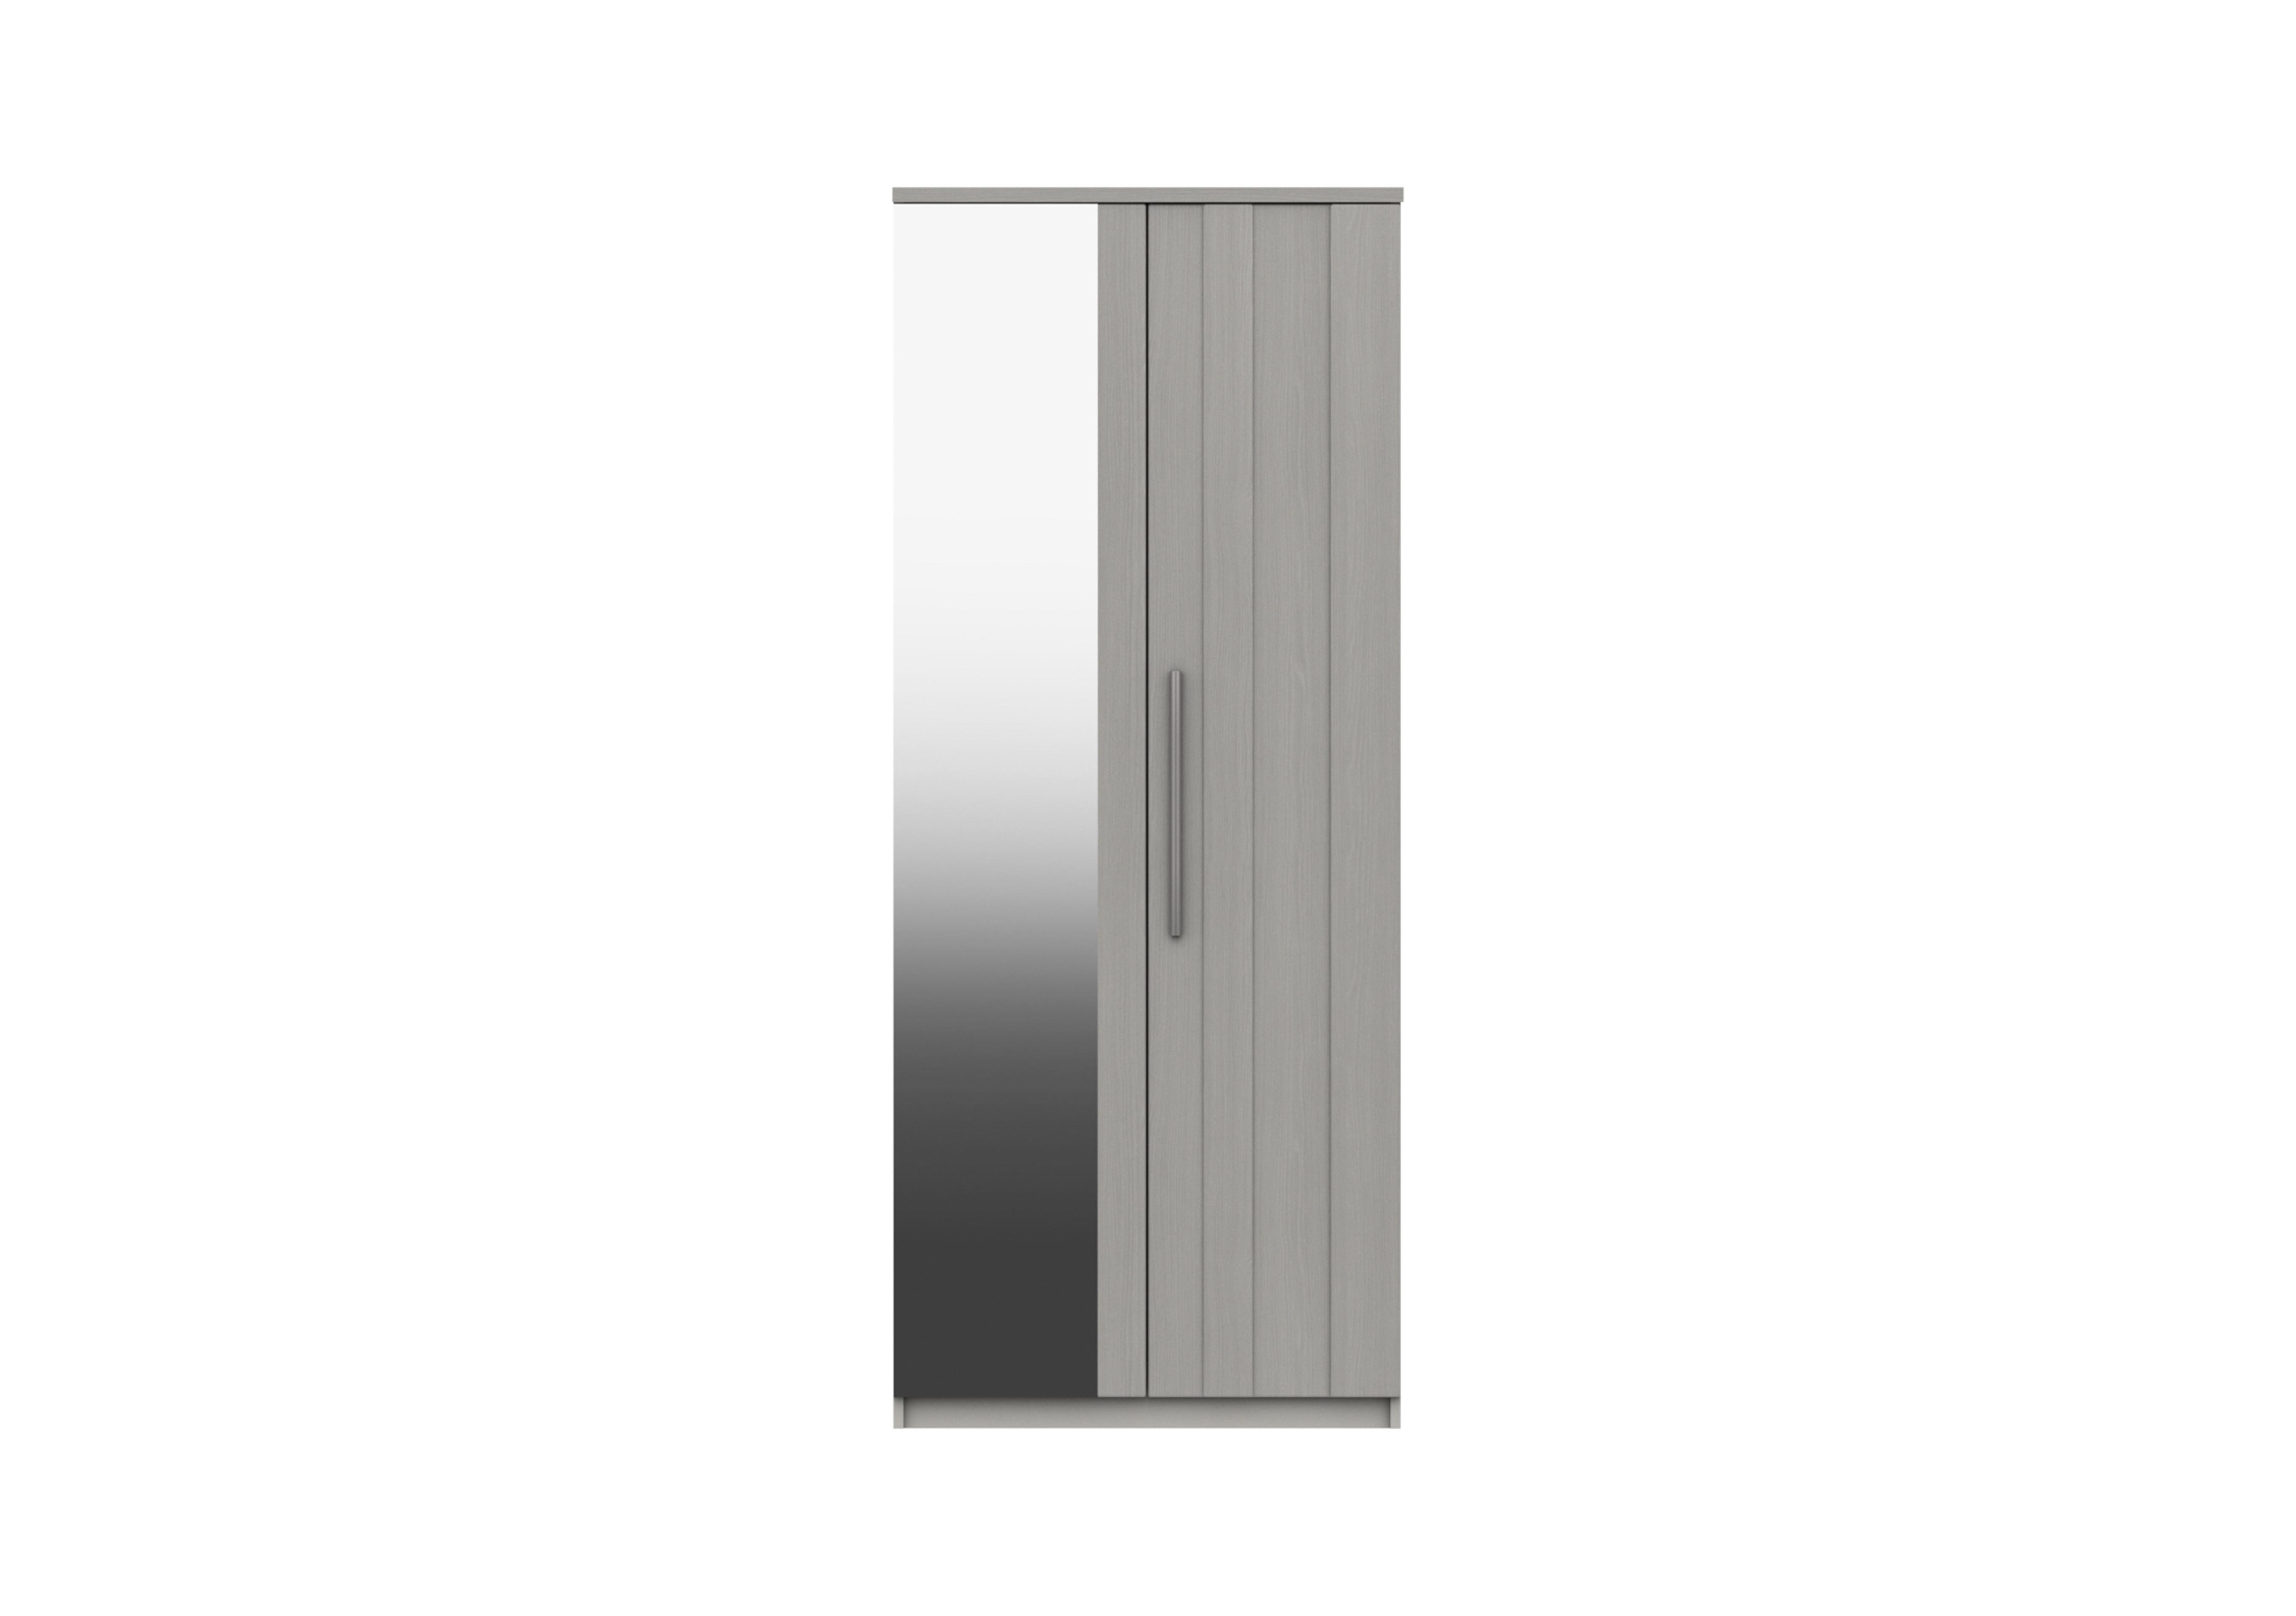 Victoria 2 Door Wardrobe with Mirror in Light Grey on Furniture Village